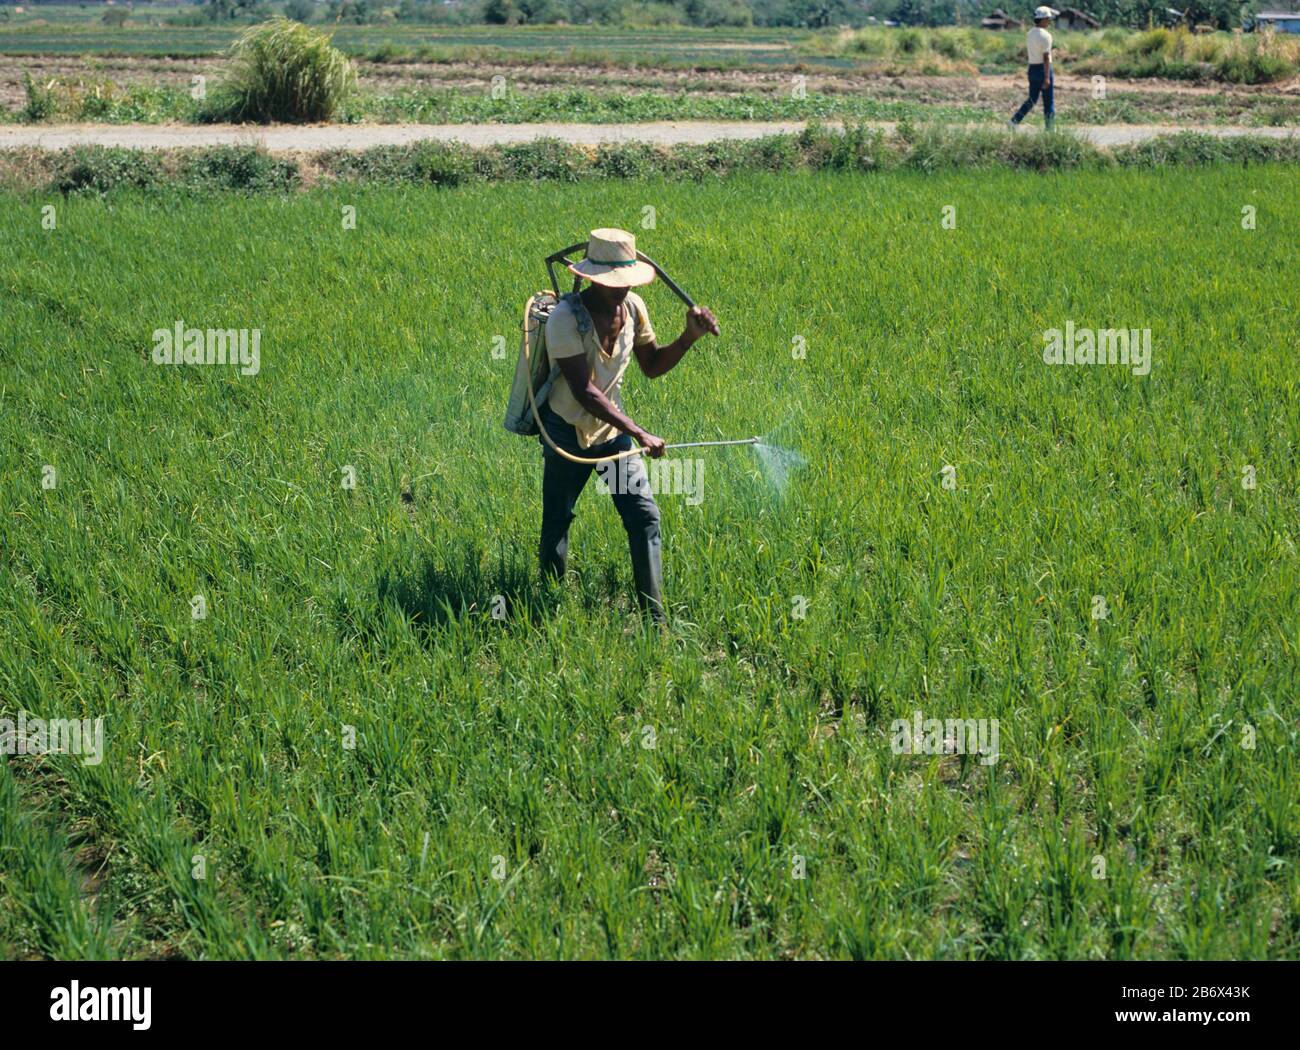 Fumigación filipina en un cultivo de arroz de tierras altas (Oryza sativa) con un pulverizador de mochila, Luzon, Filipinas Foto de stock